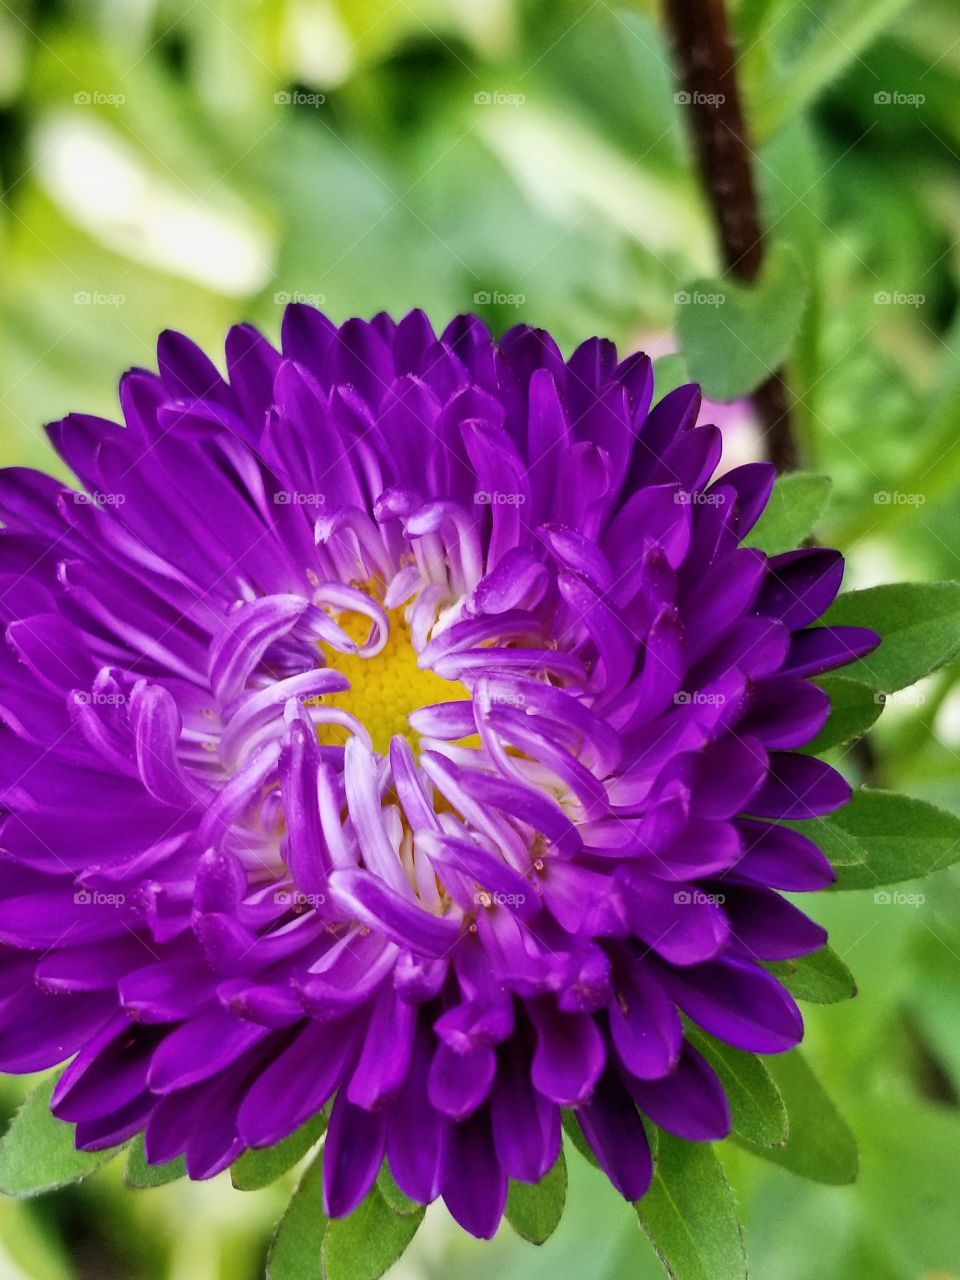 Purple beauty